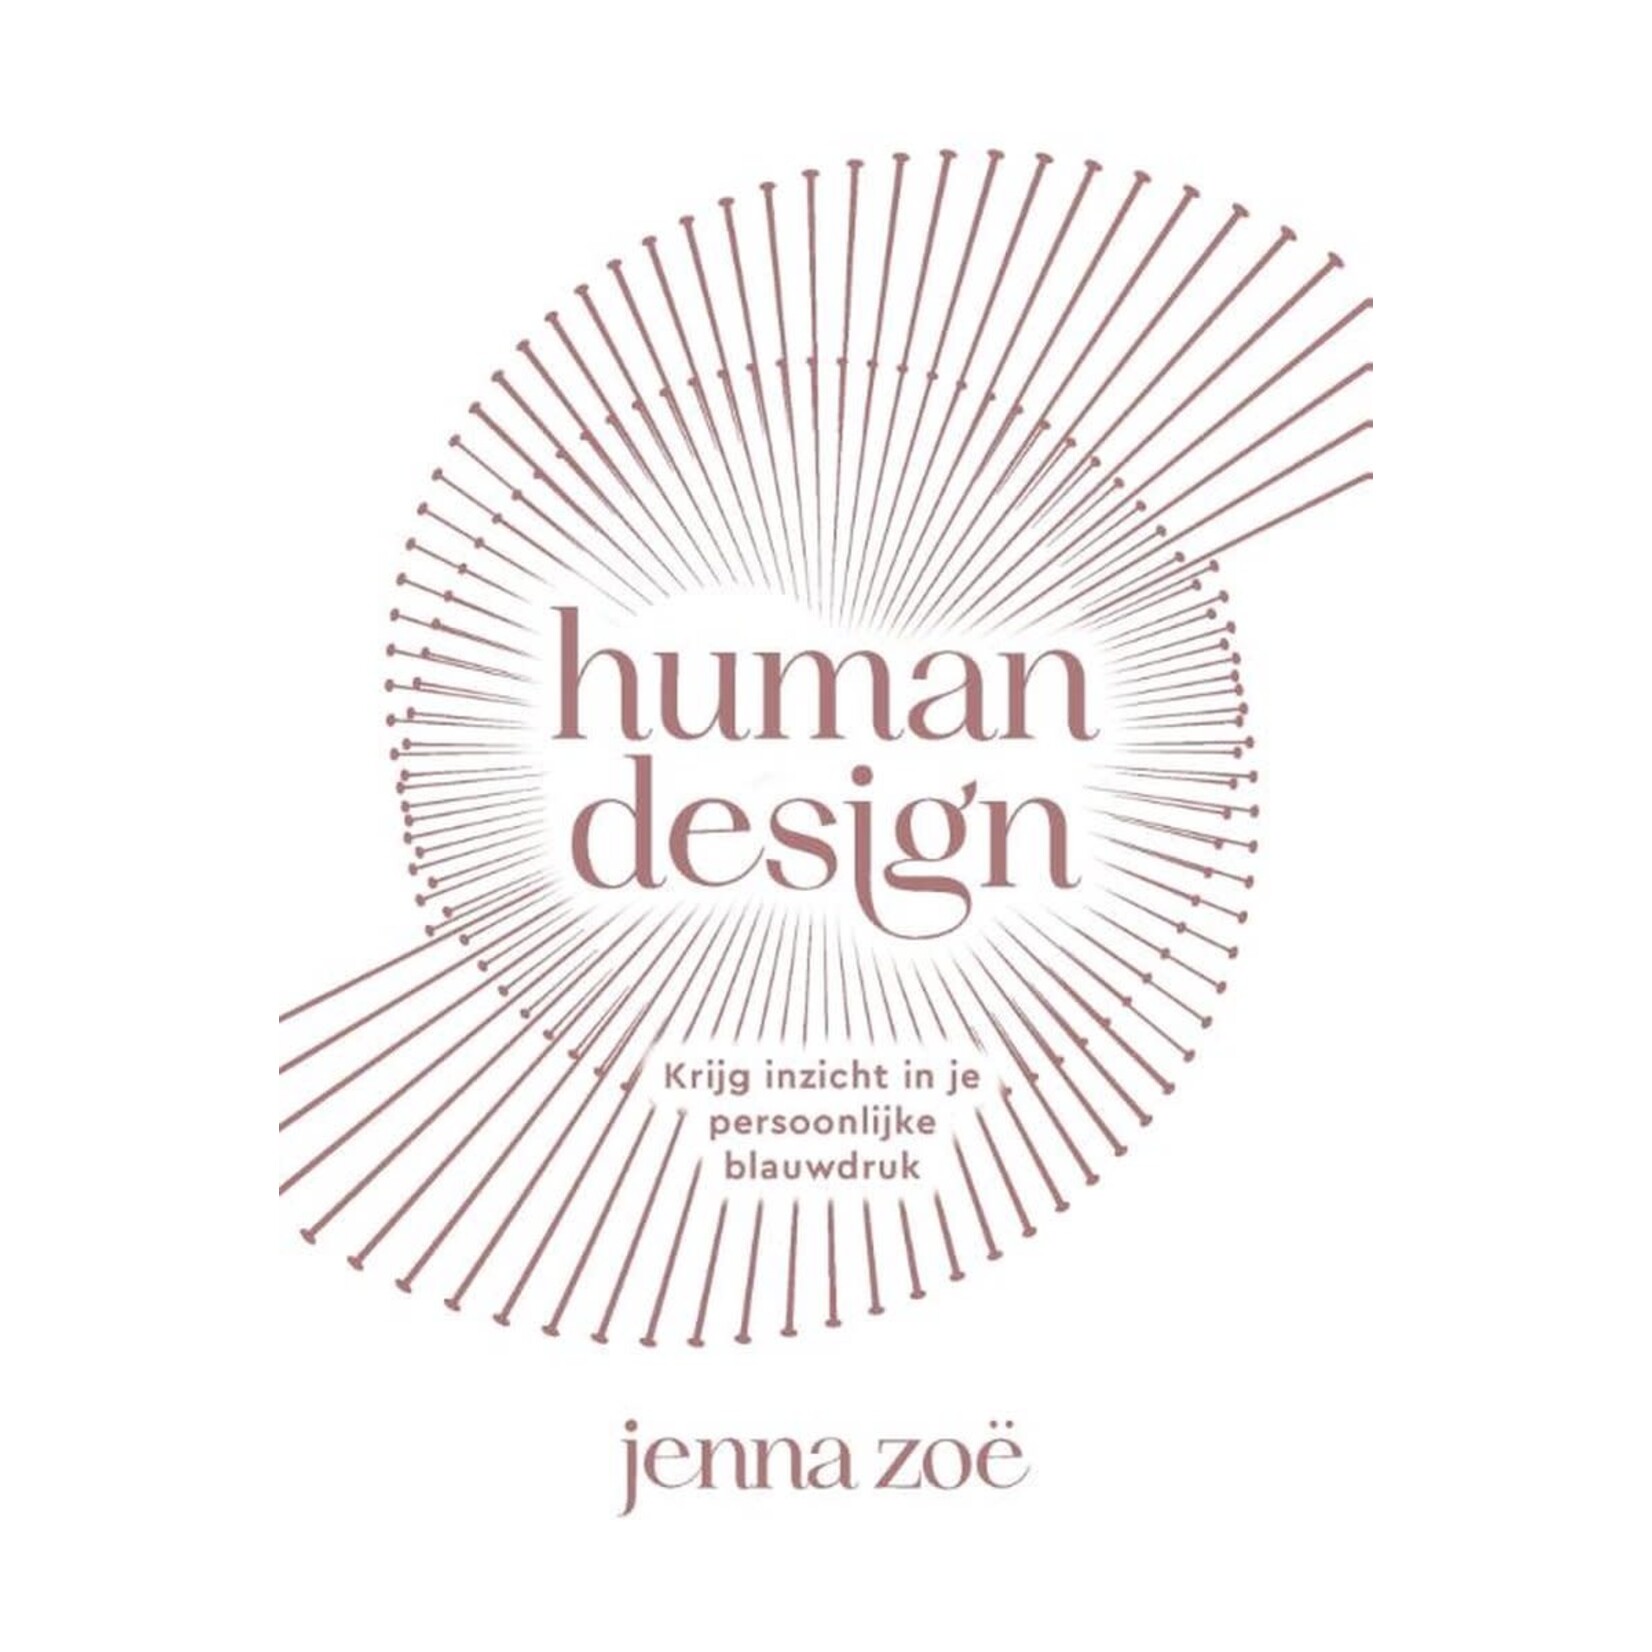 Human design, Krijg inzicht in je persoonlijke blauwdruk